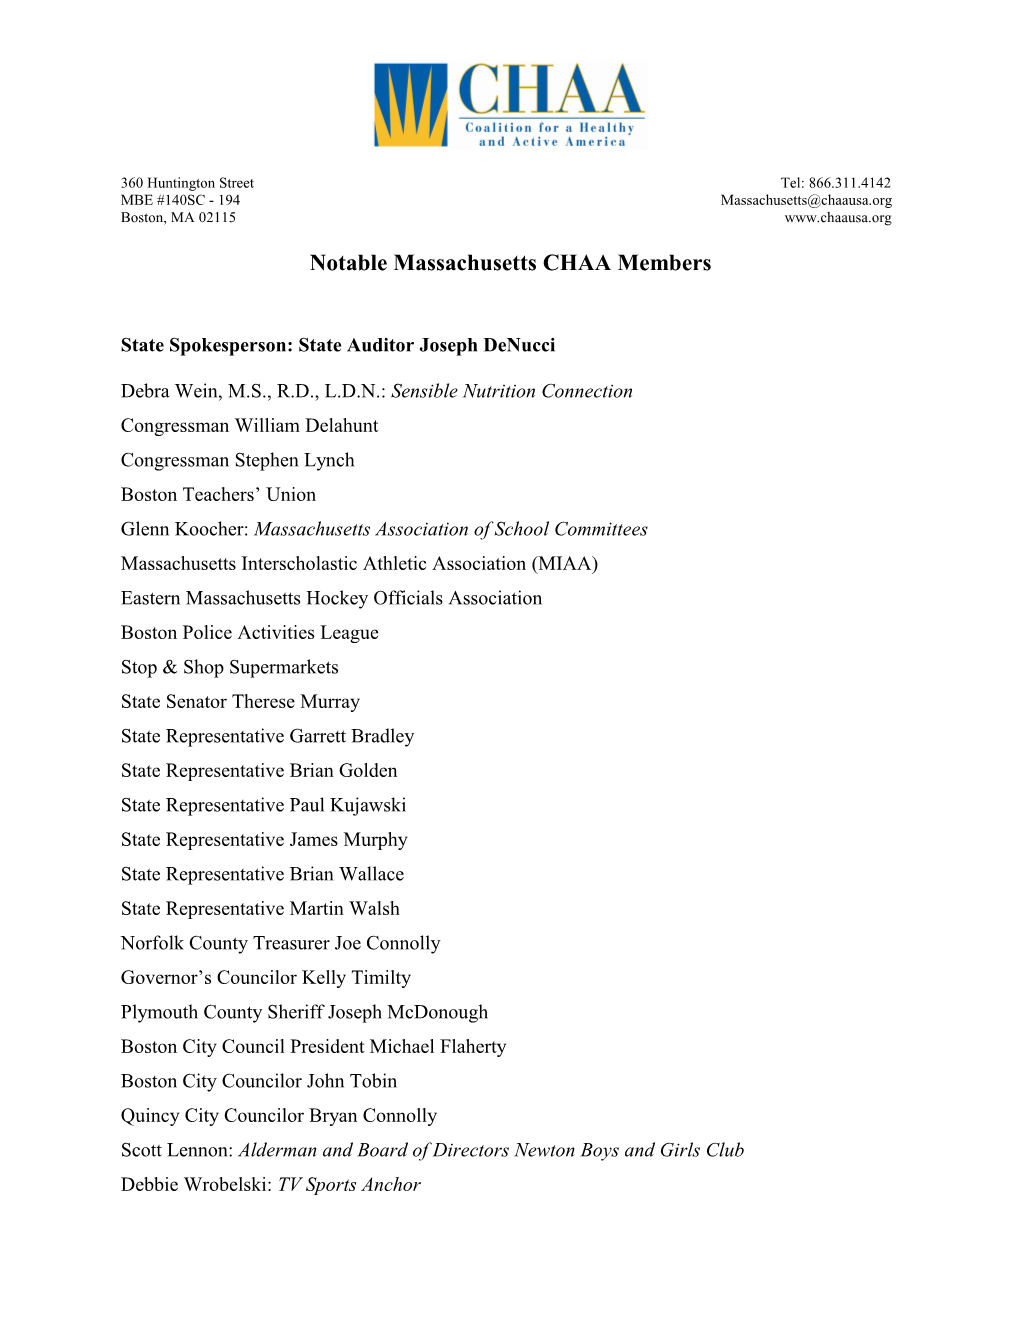 Notable Massachusetts CHAA Members